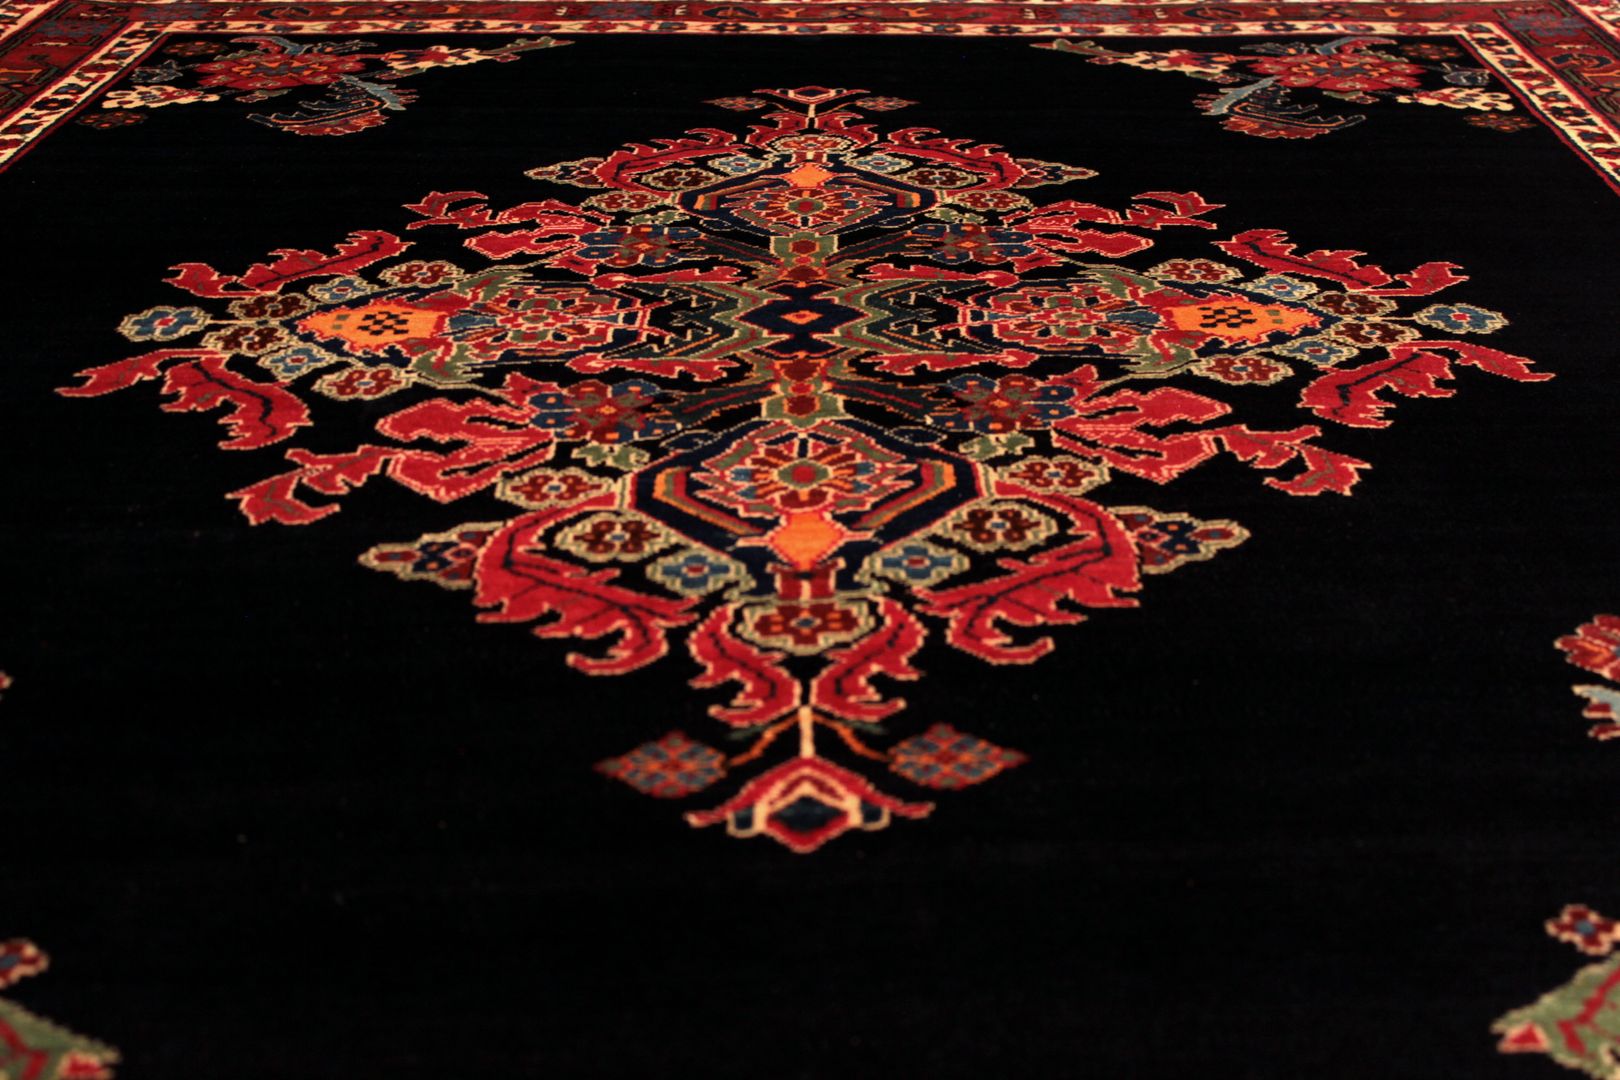 Irańskie dywany tradycyjne, Sarmatia Trading Sarmatia Trading أرضيات صوف Orange سجاد